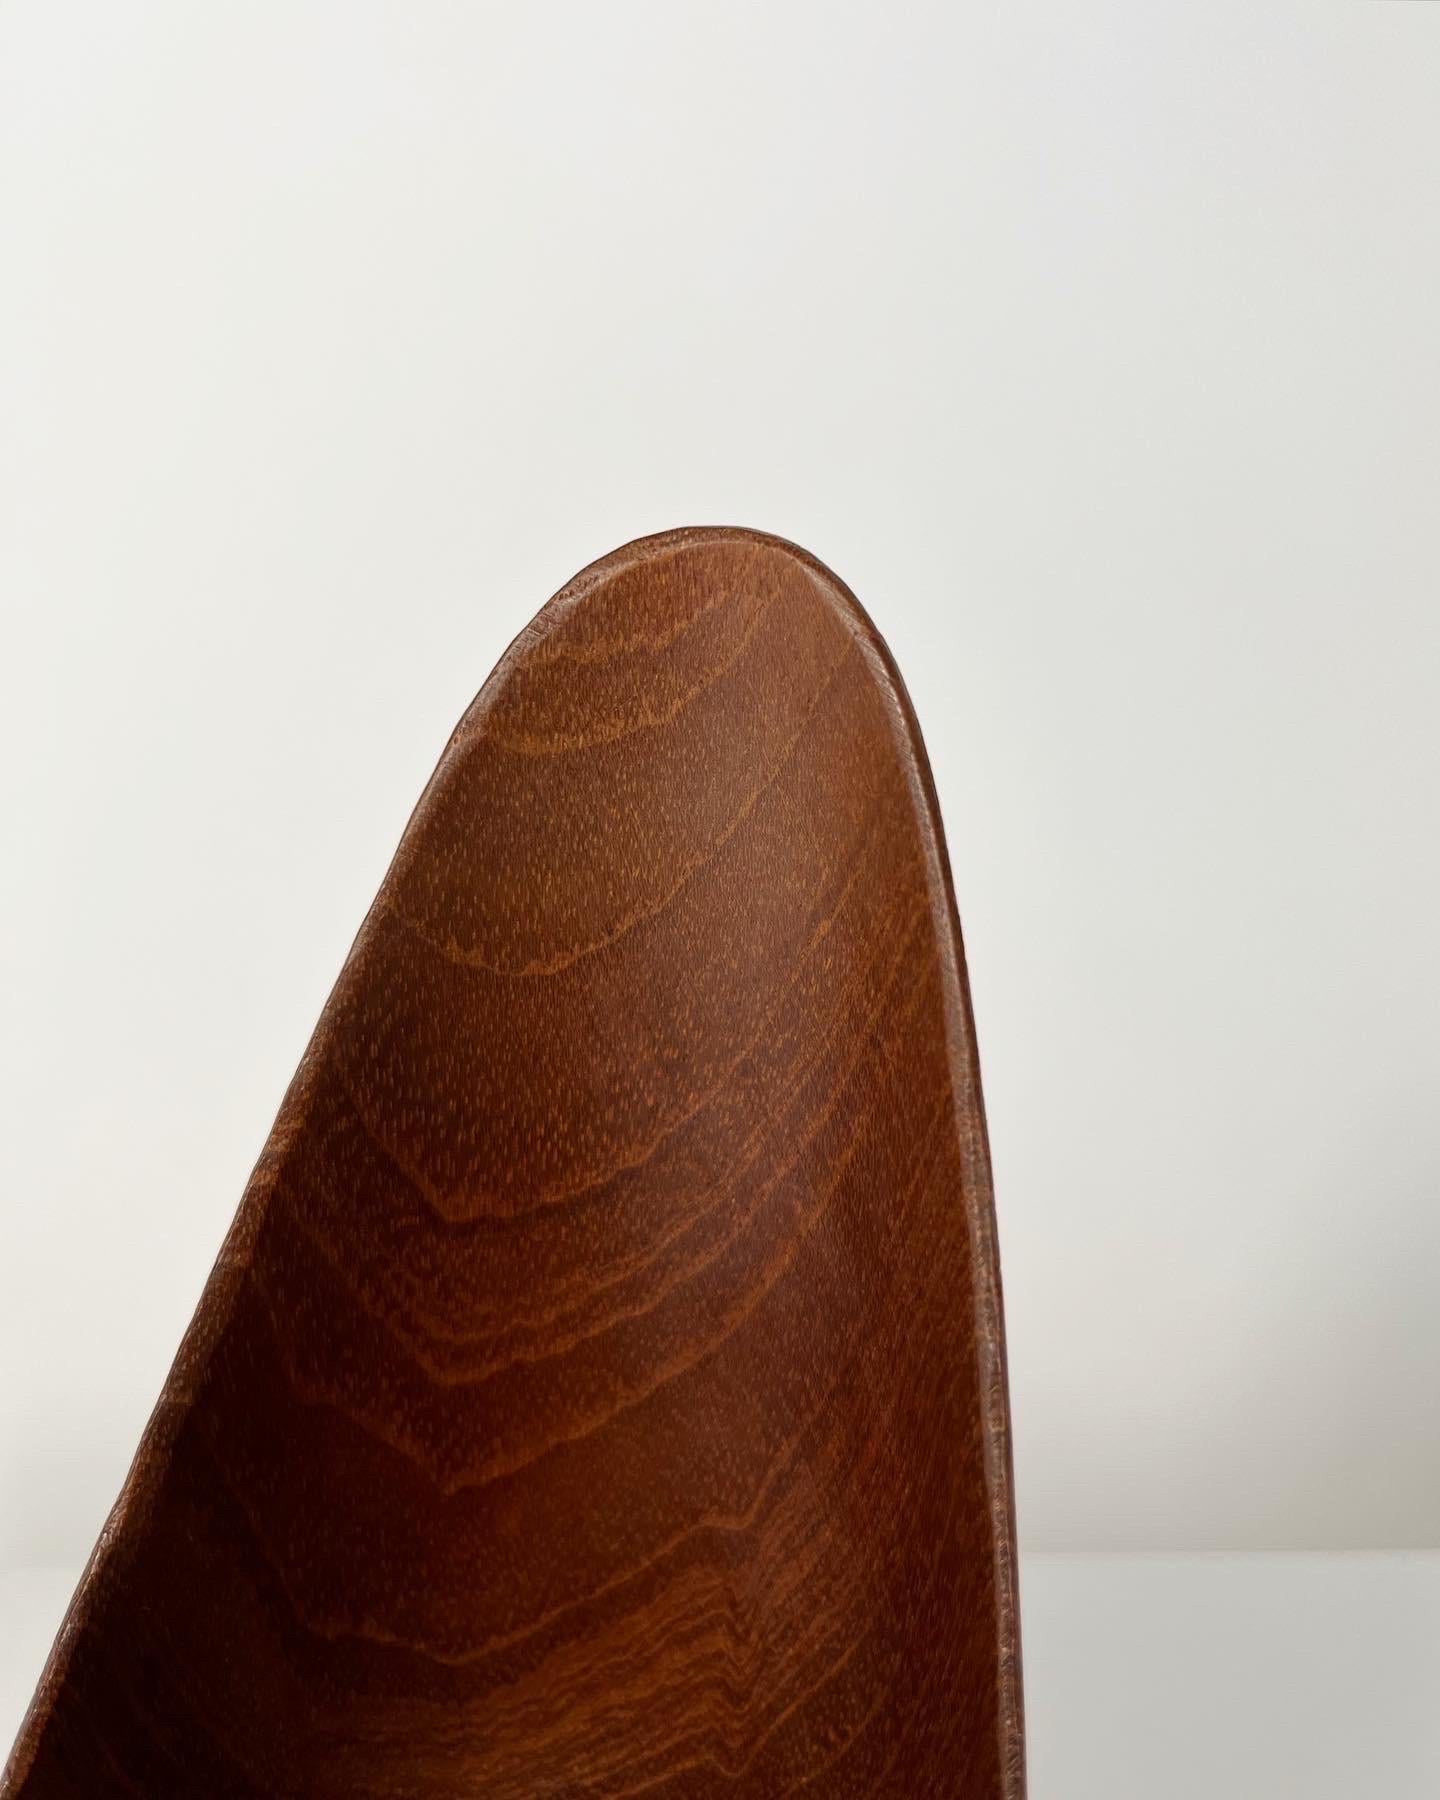 Stig Sandkvist Teak Bowl Hand Carved Sweden 1950s Midcentury Design 1